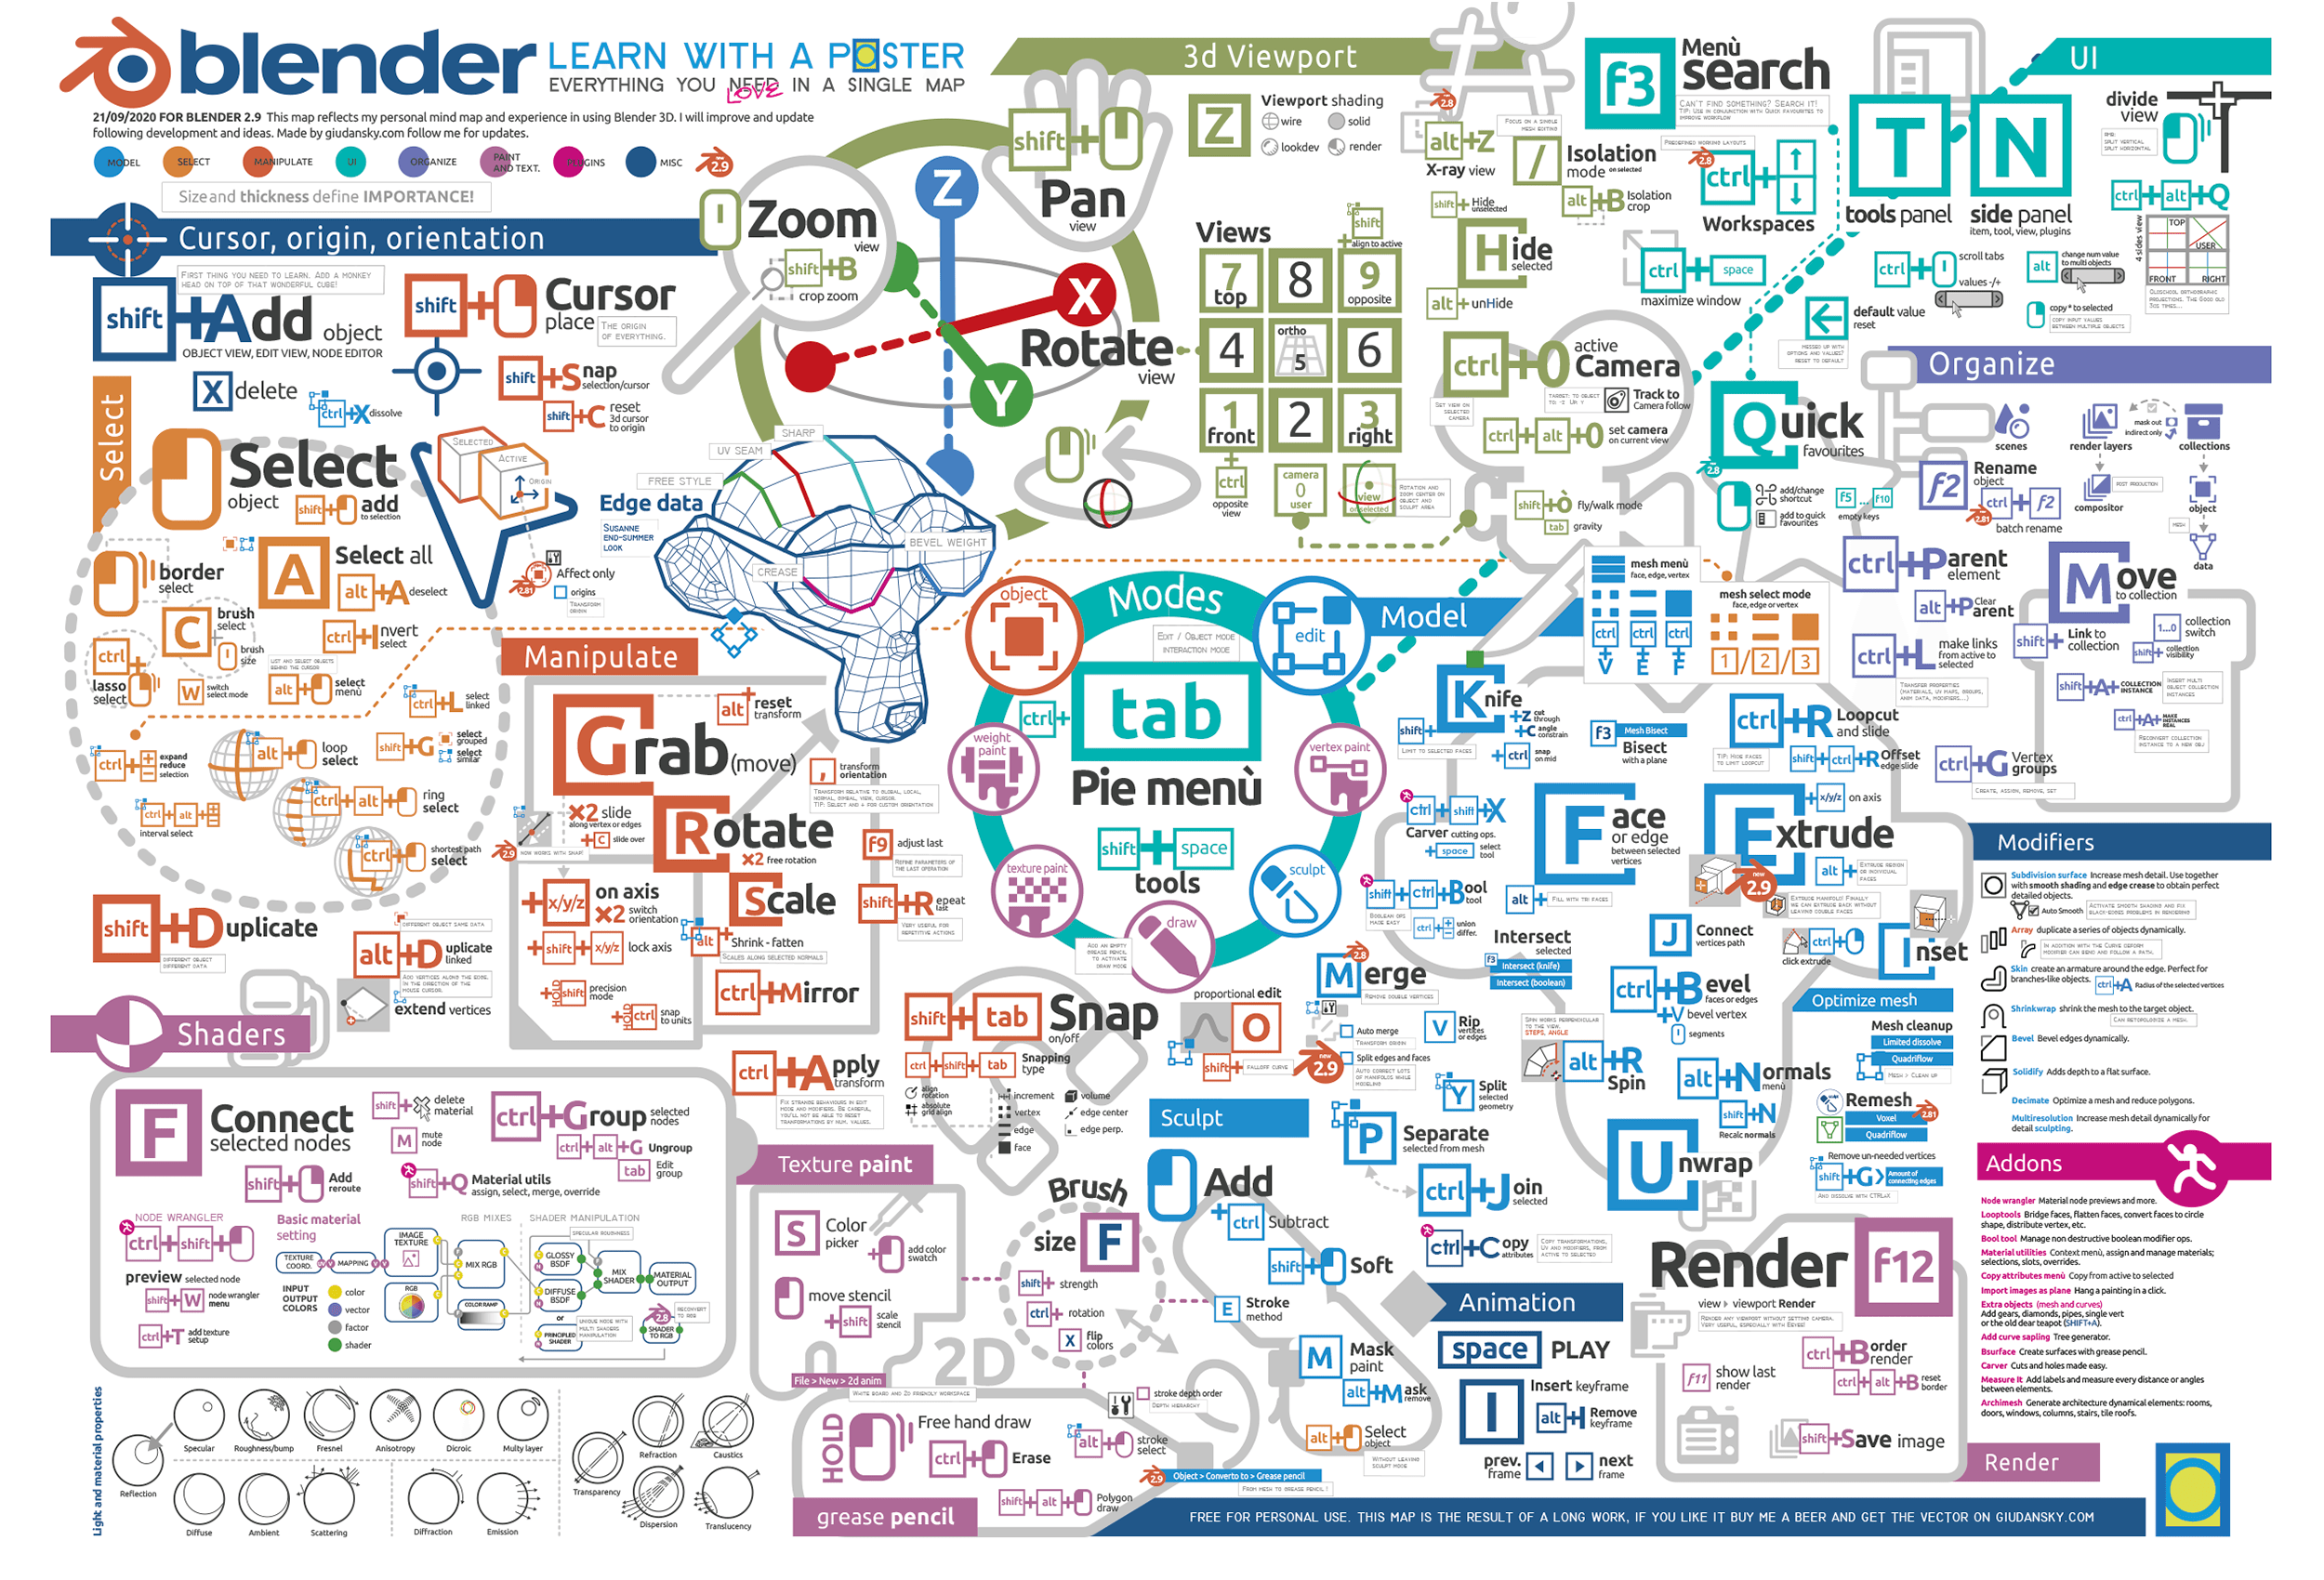 blender-infographic